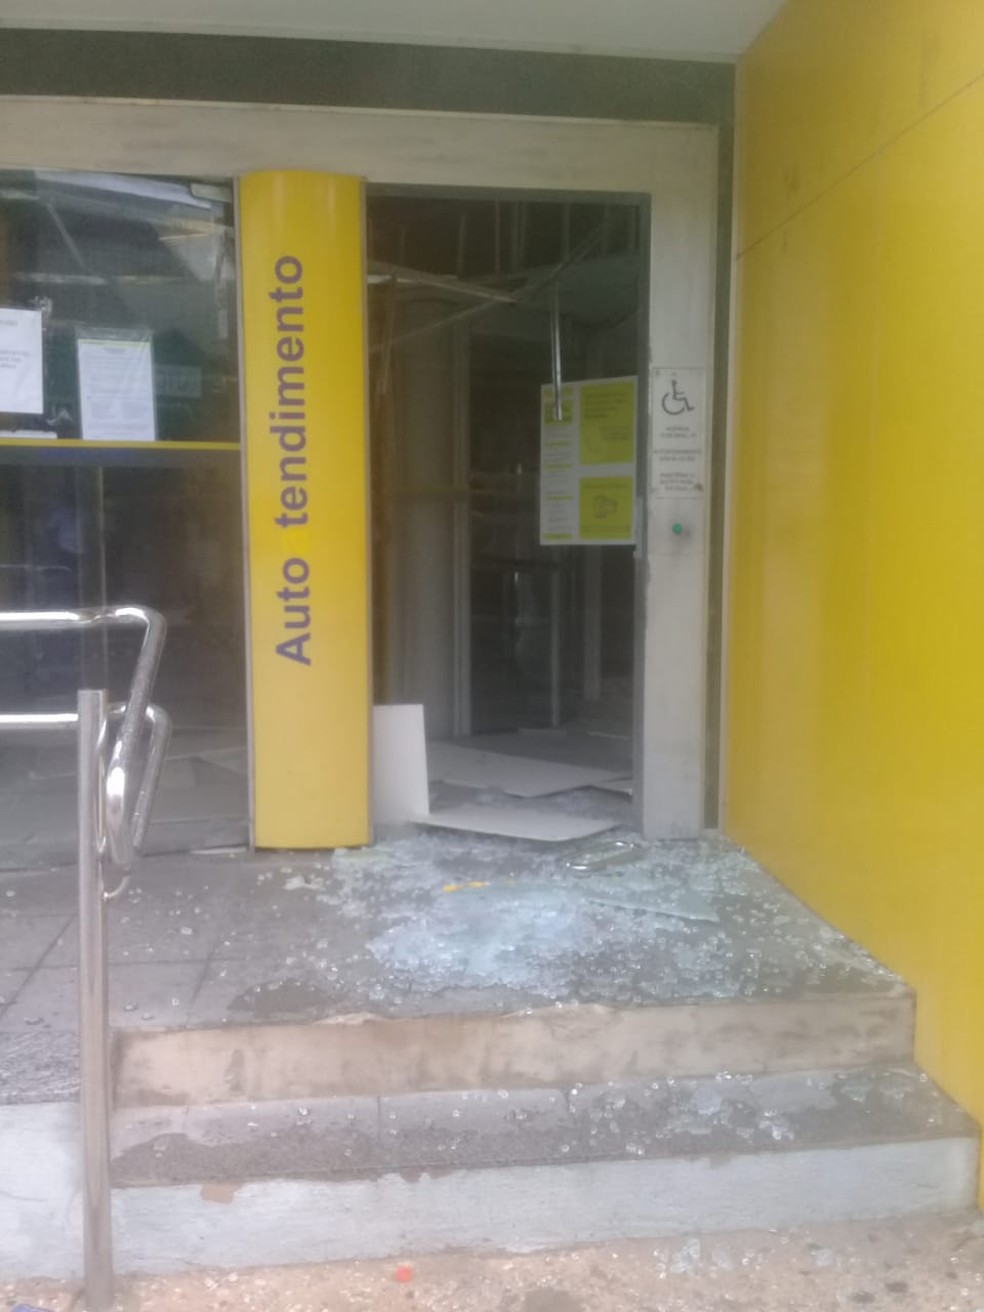 Bandidos causaram grande estrago em agência do Banco do Brasil no Centro de Teresina — Foto: Divulgação/PM